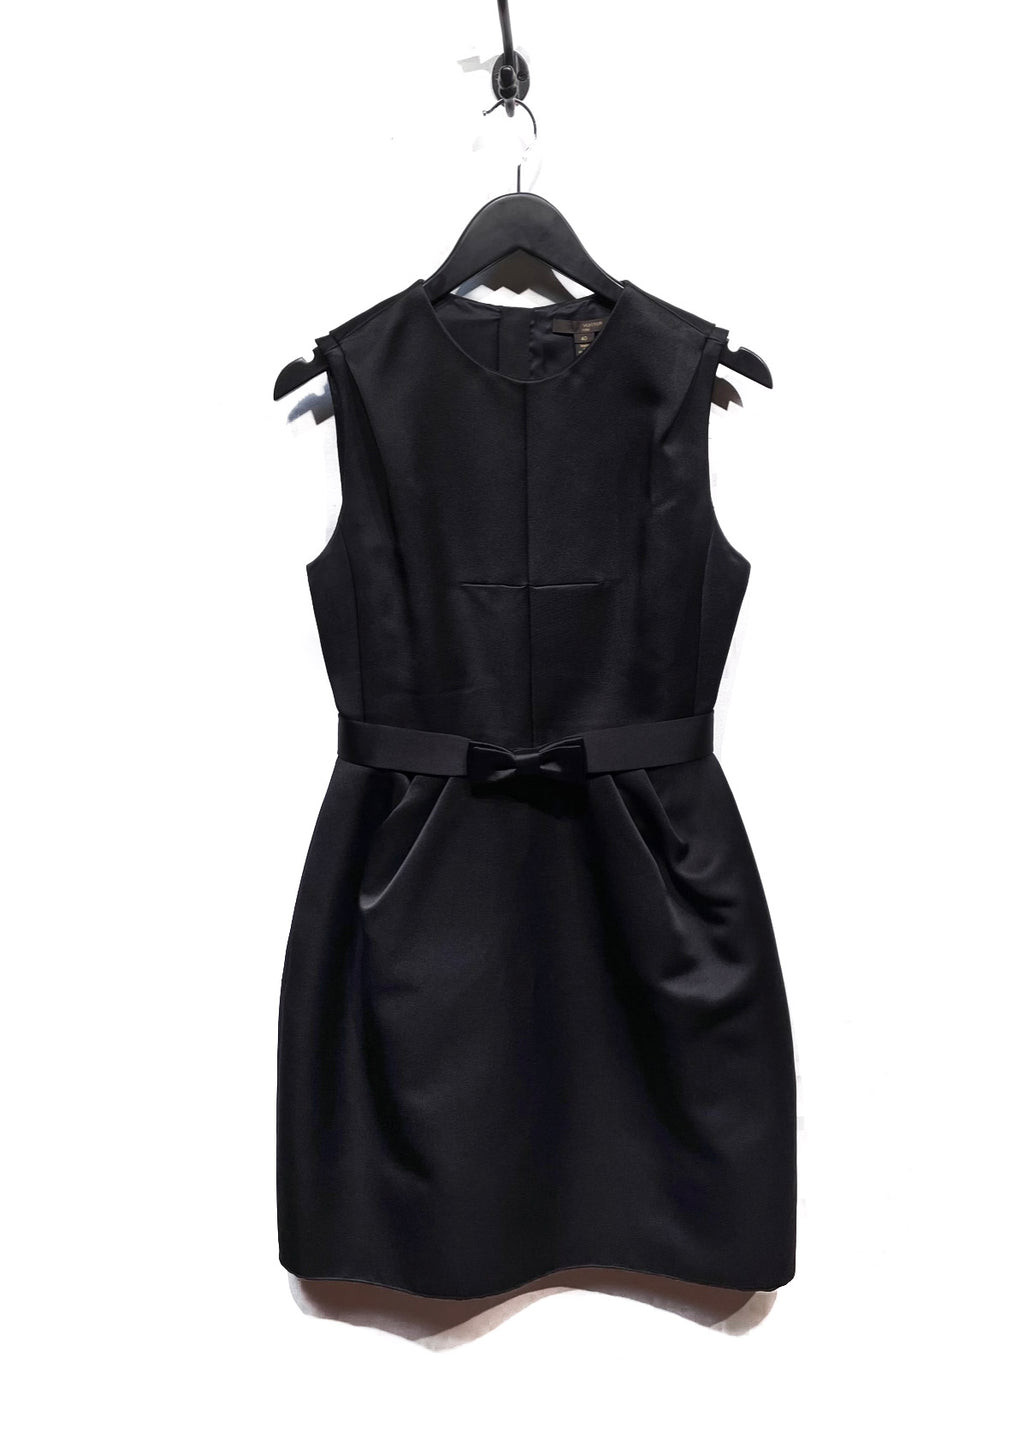 Robe sans manches Louis Vuitton noire en soie épaisse avec nœud